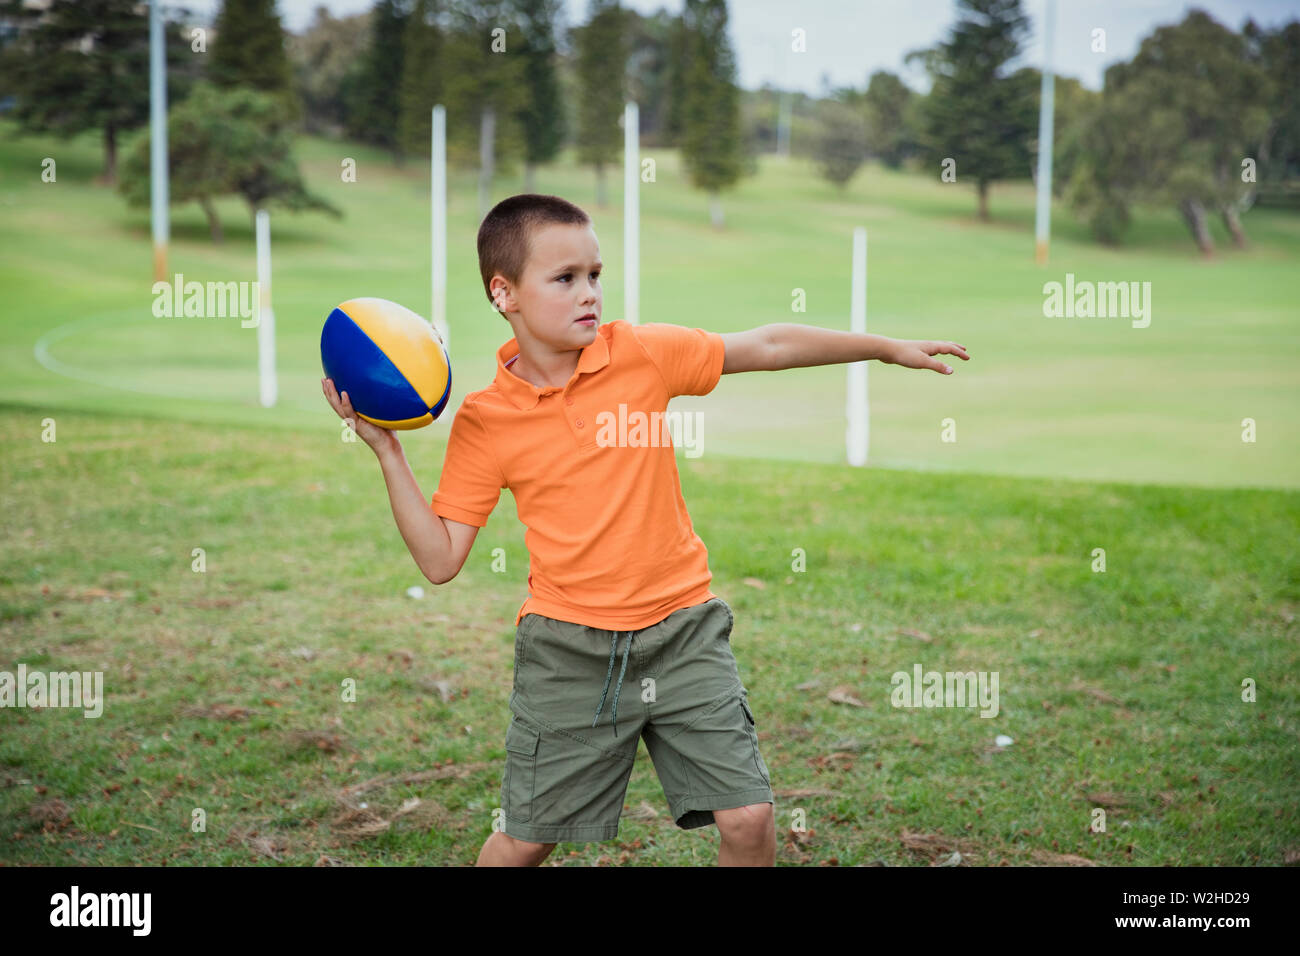 Ein Porträt der jungen kaukasischen Jungen legere Kleidung, hält er einen rugby ball, schaut er in die Kamera. Stockfoto